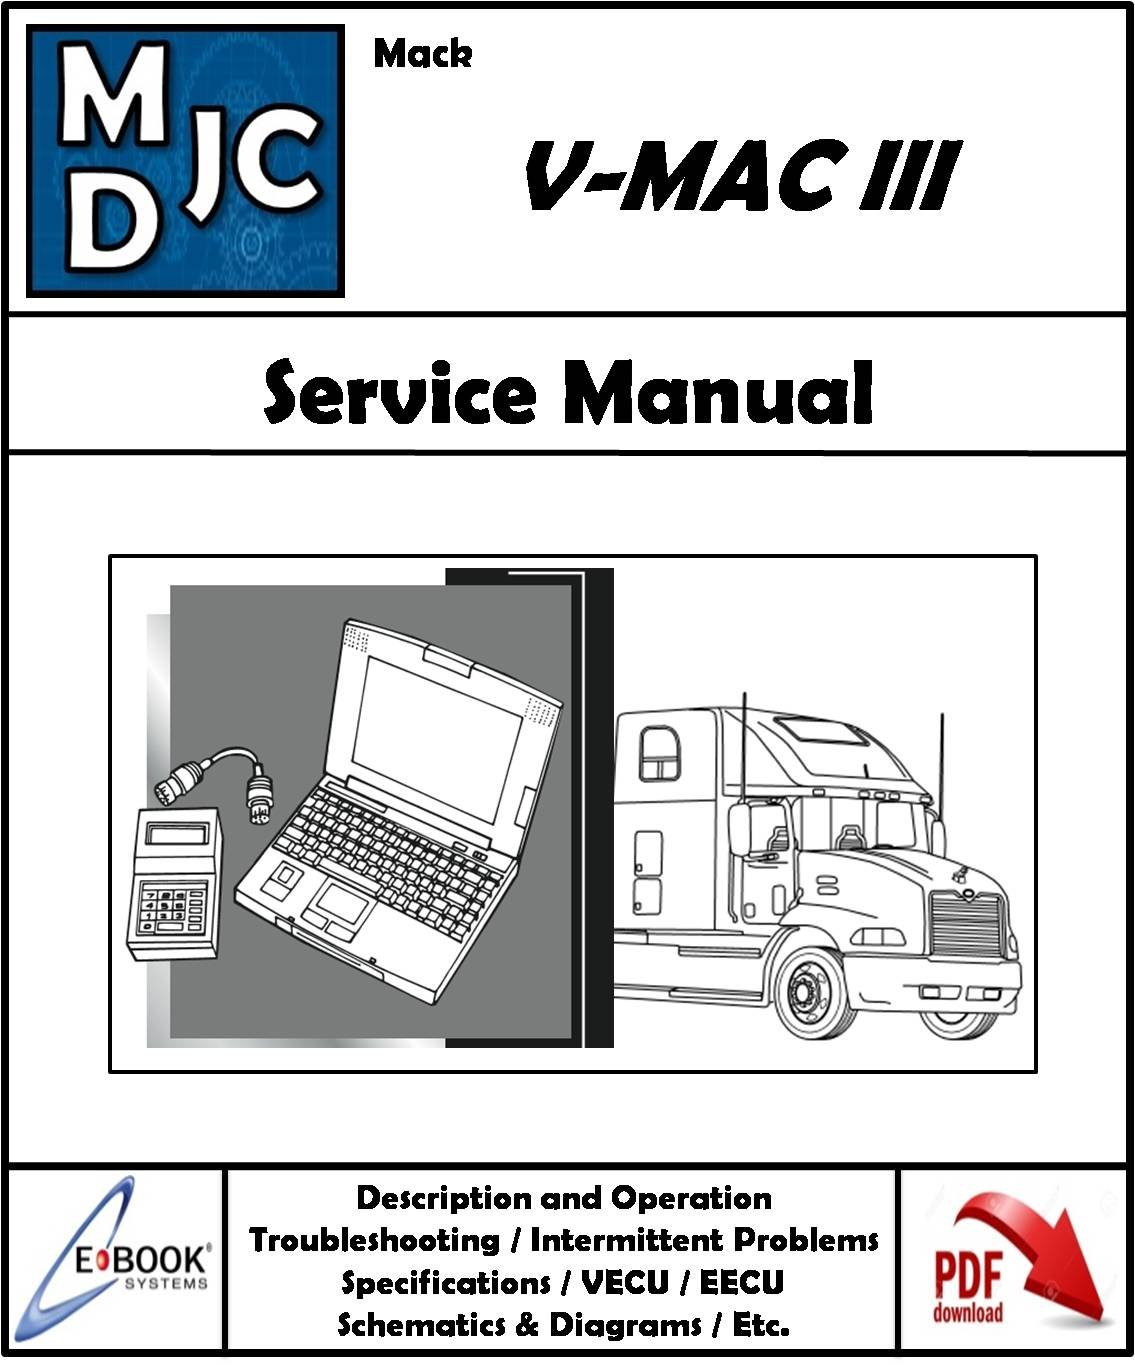 Mack  V-MAC III